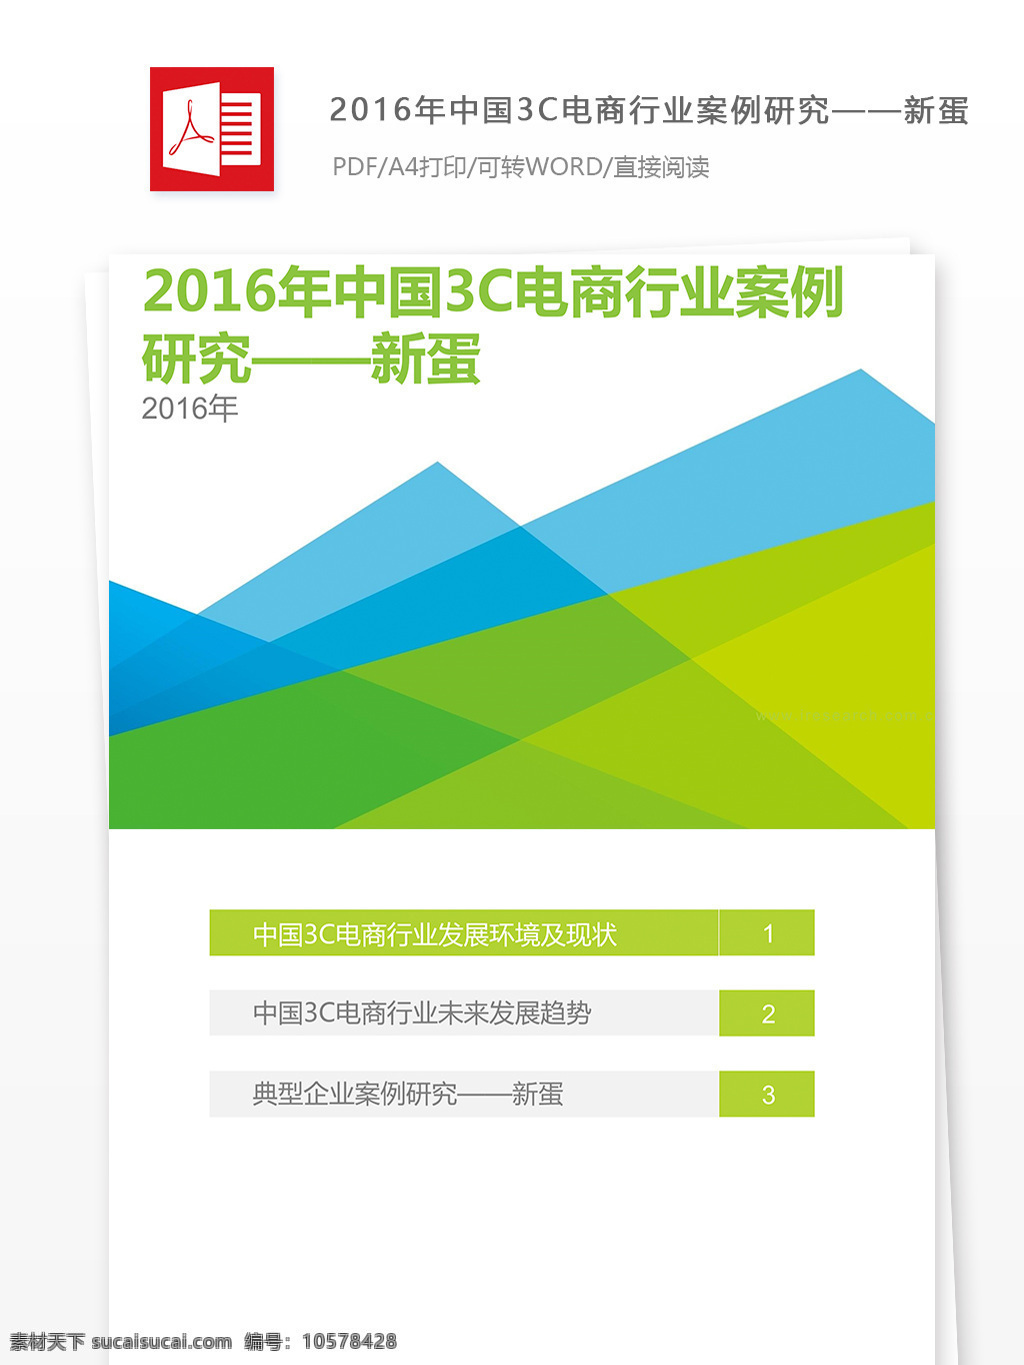 中国 3c 电商 行业 案例 研究 中国3c电商 行业案例 3c电商行业